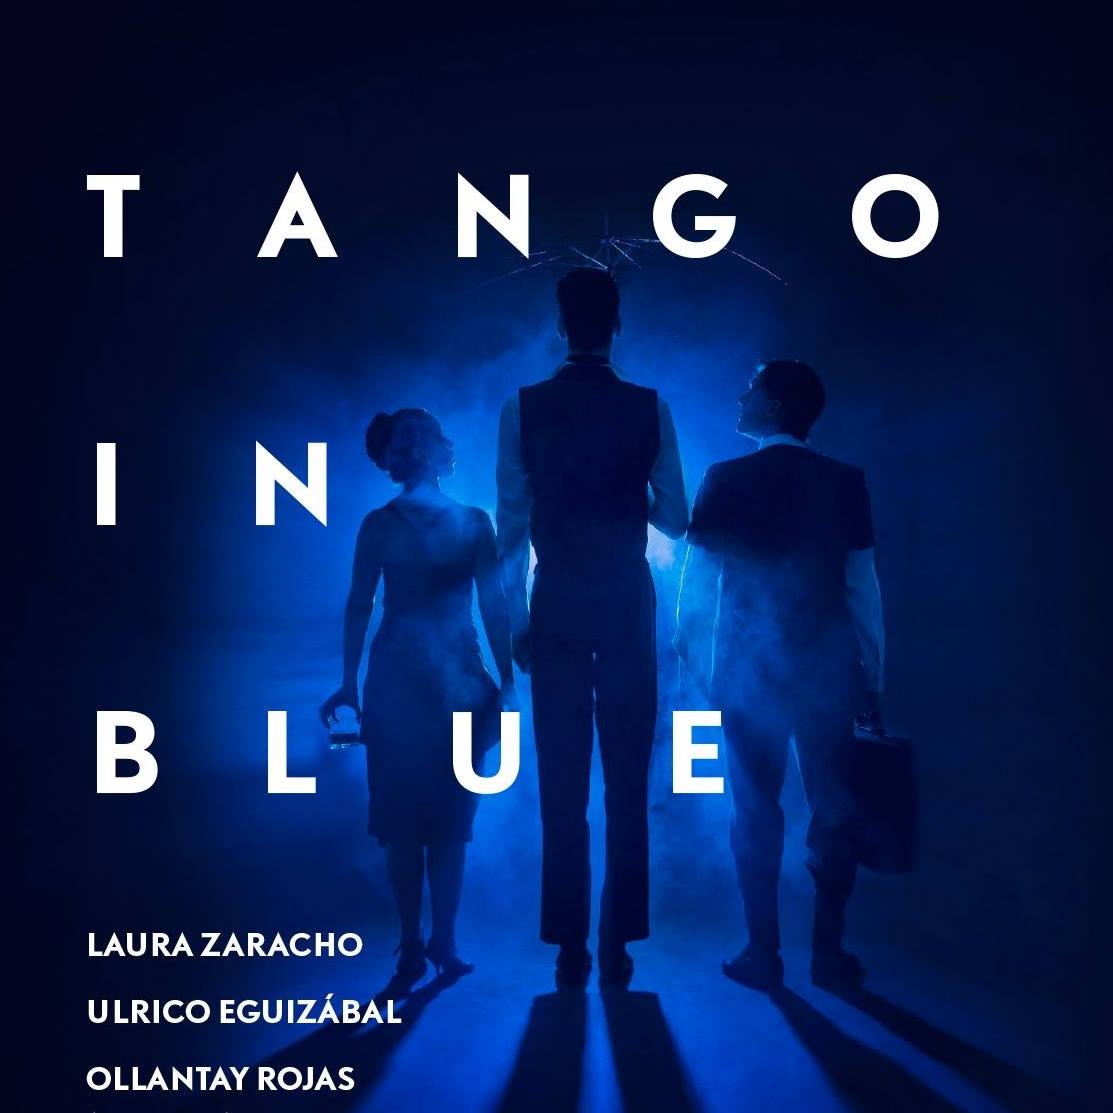 Tango in blue